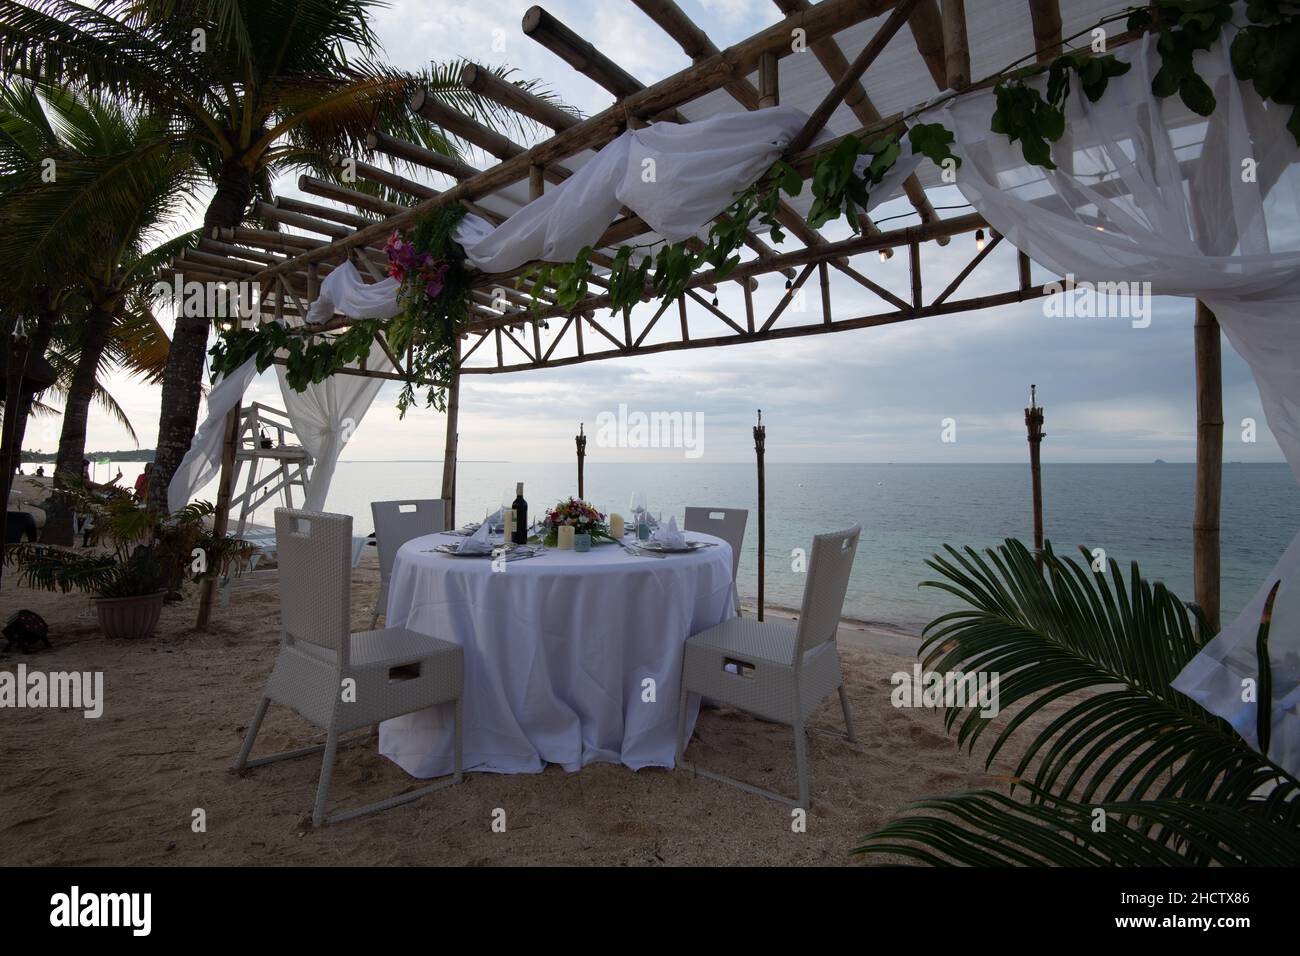 Ein Blick auf das Meer und ein hölzernes Baldachin mit einem wunderschön dekorierten Esstisch Stockfoto